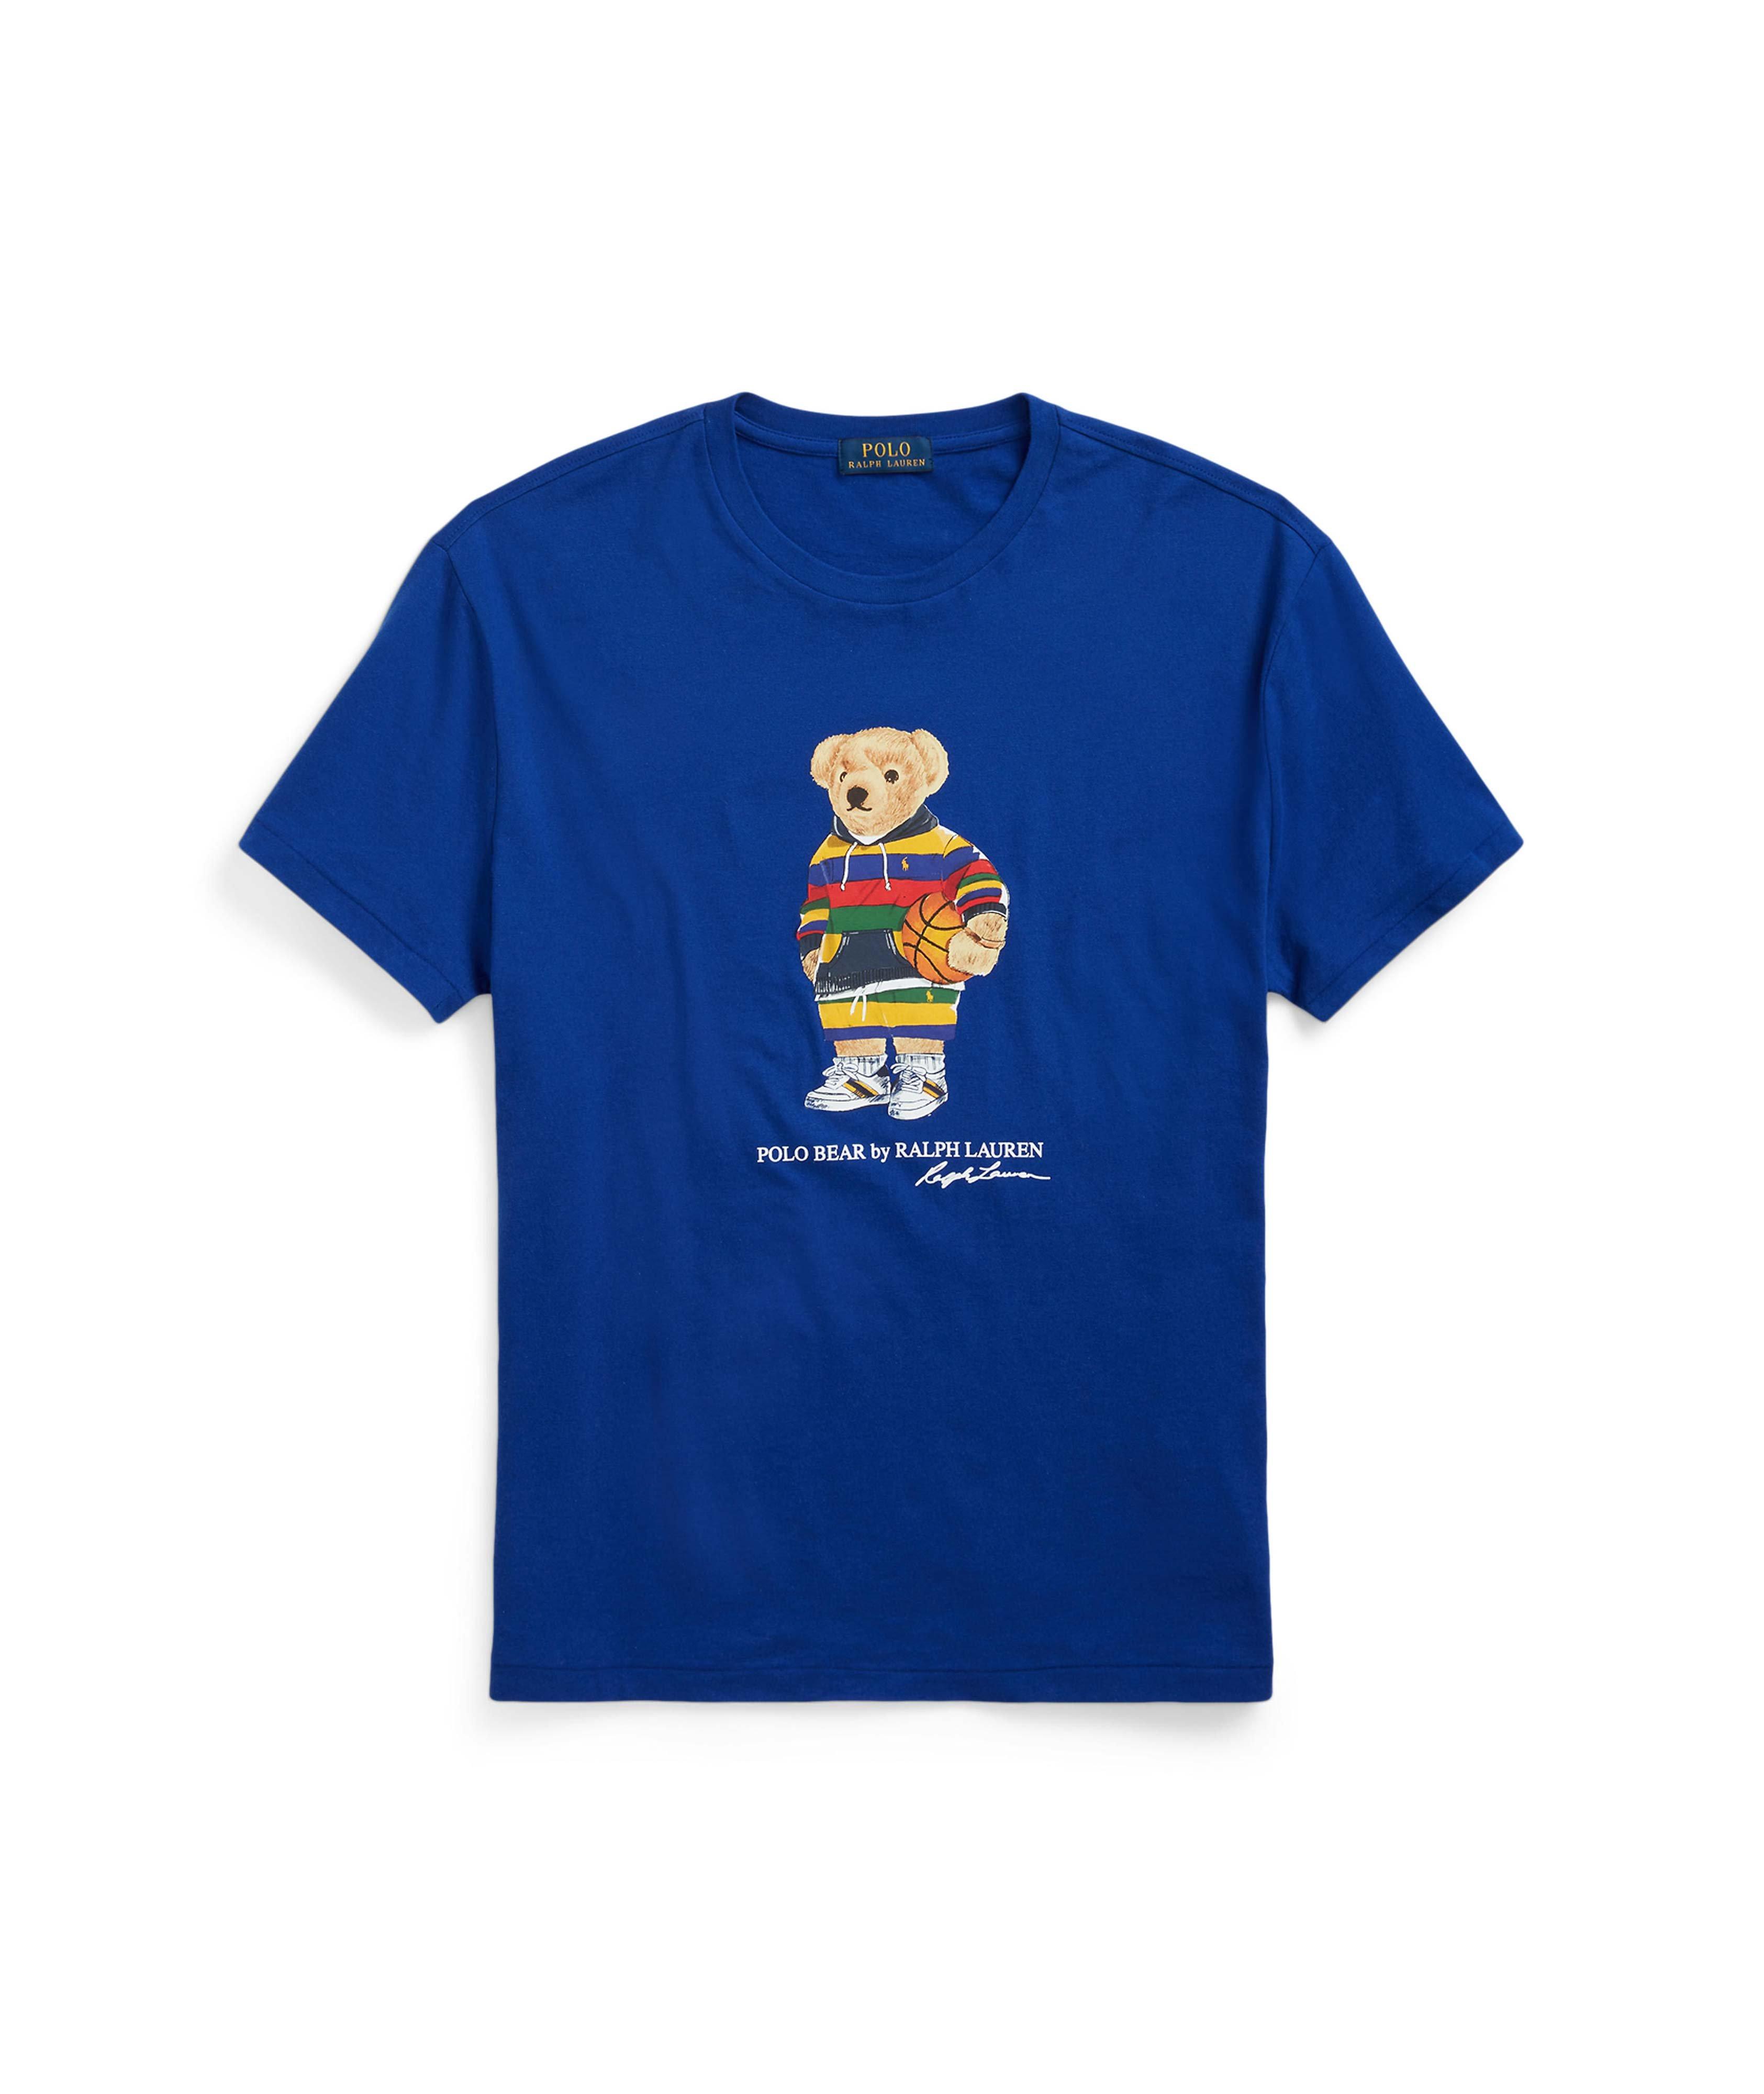 T-shirt en coton avec ourson mascotte image 0